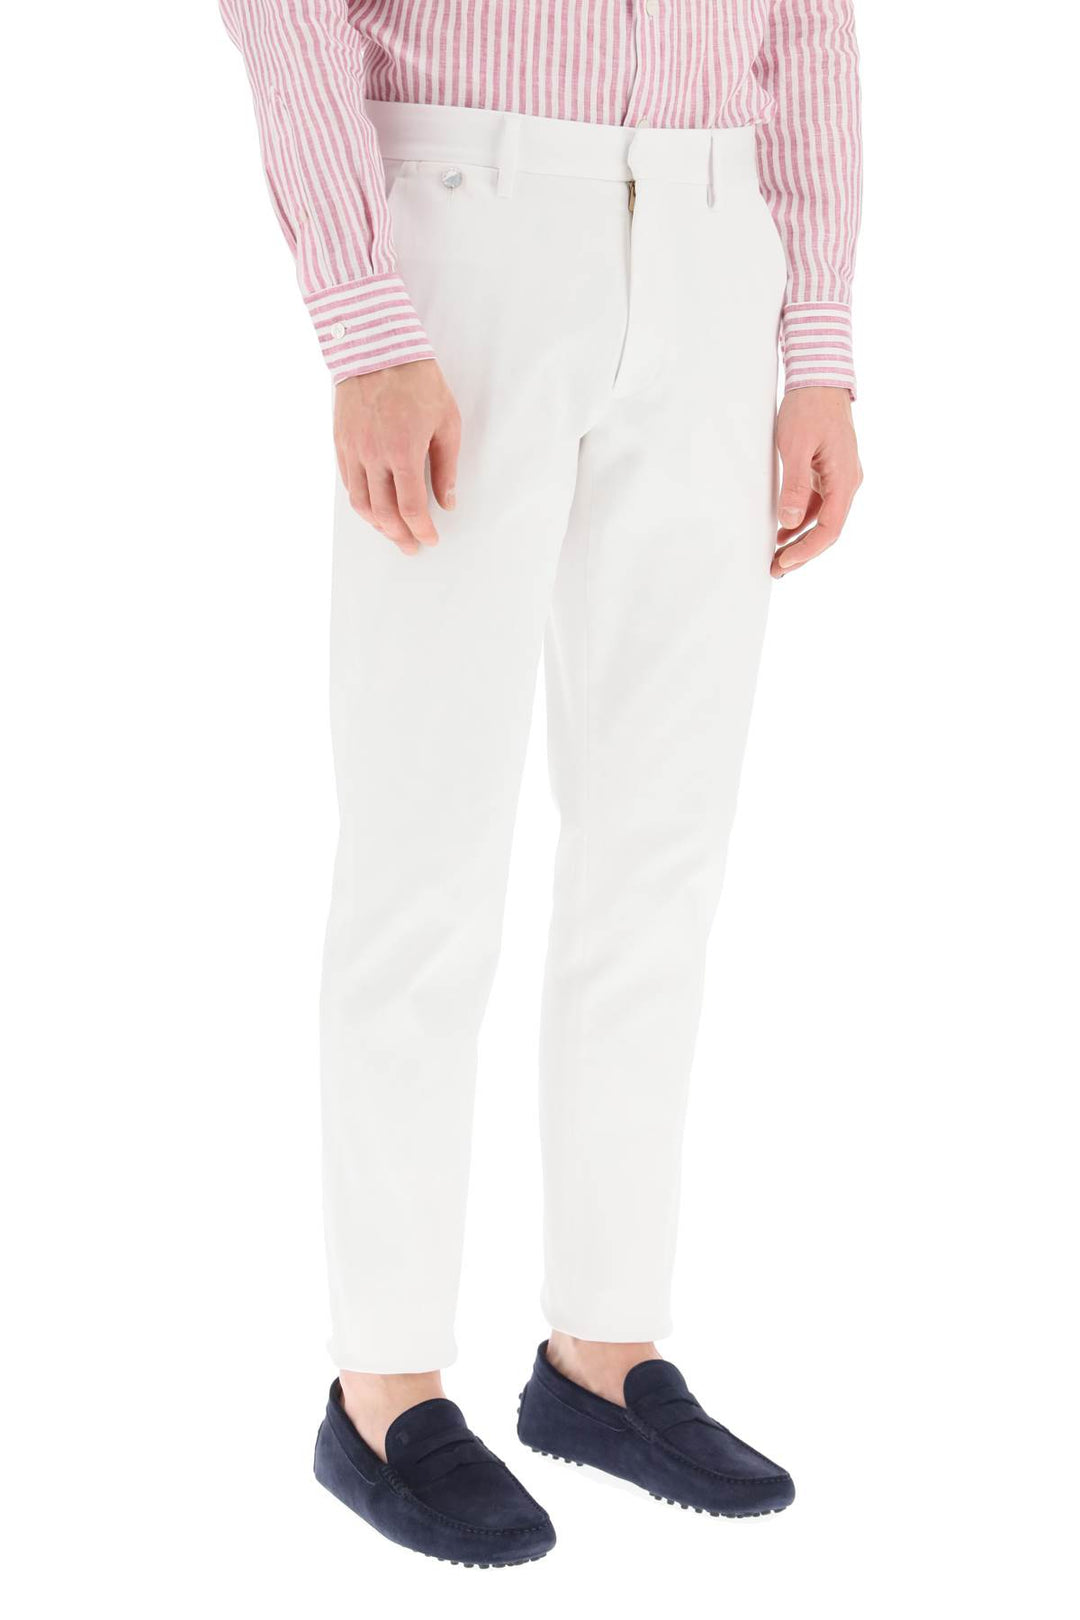 Agnona Cotton Chino Pants   Bianco